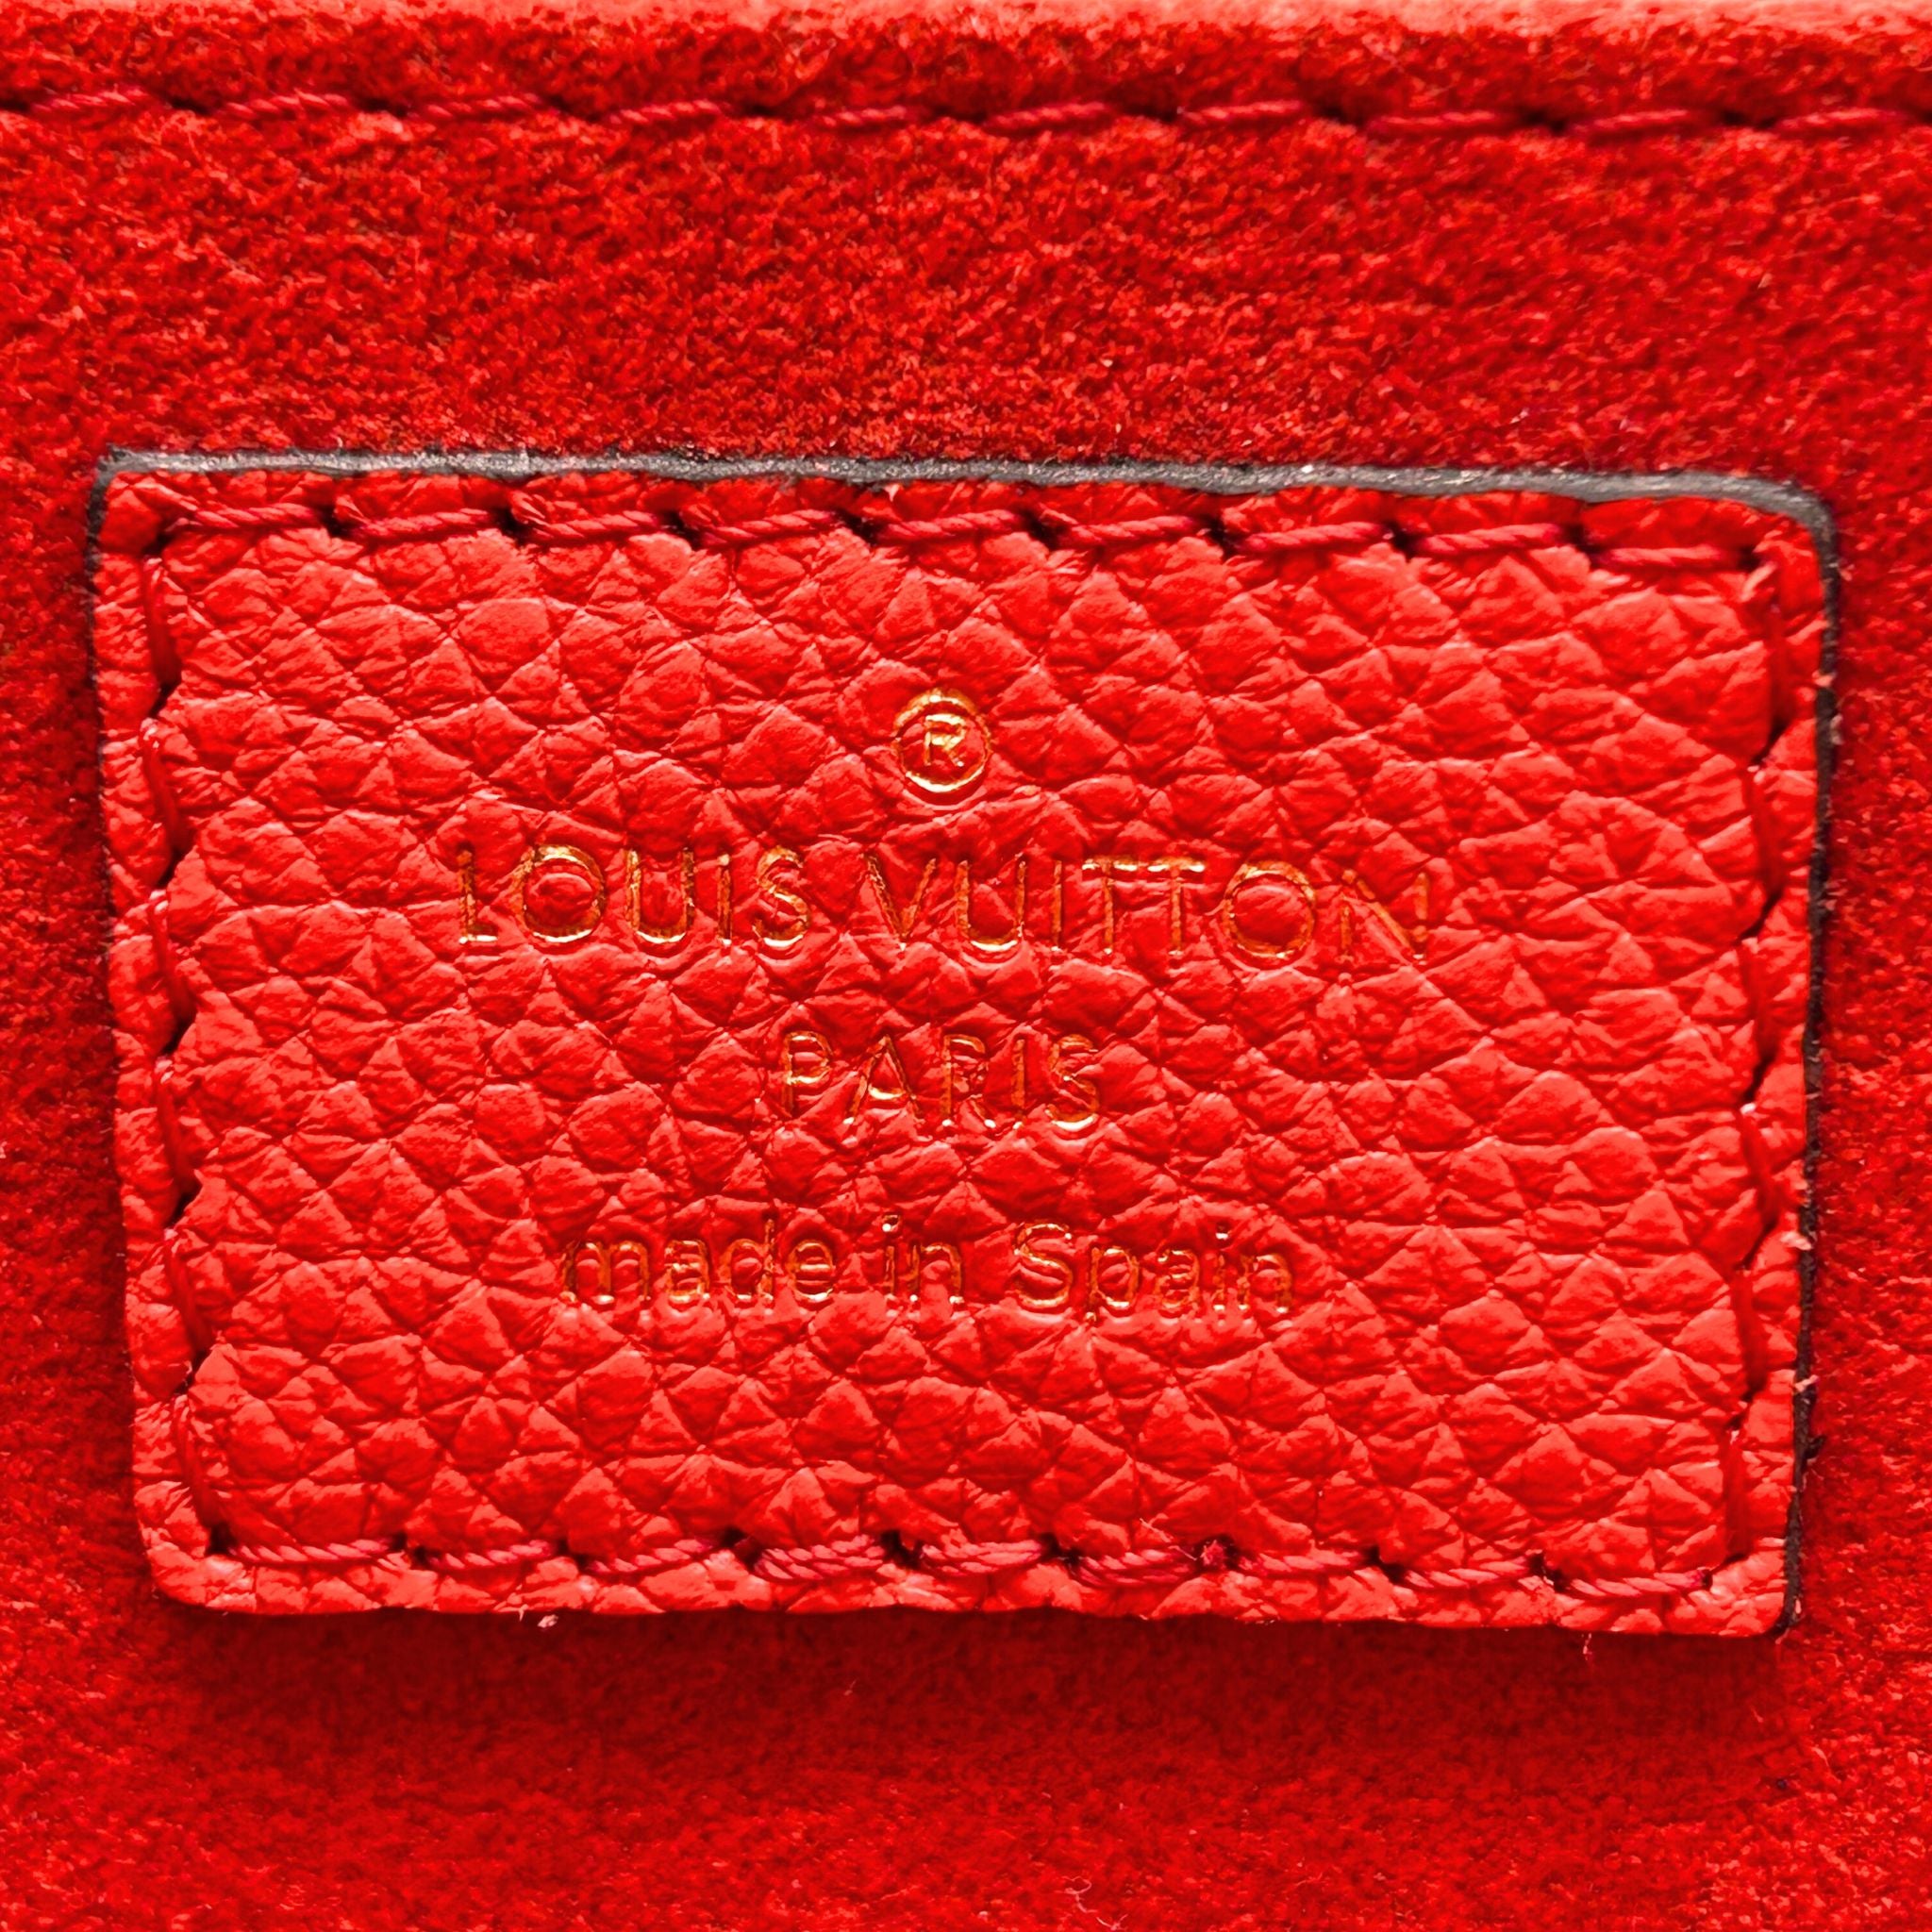 Louis Vuitton Monogram Vaugirard Coquelicot